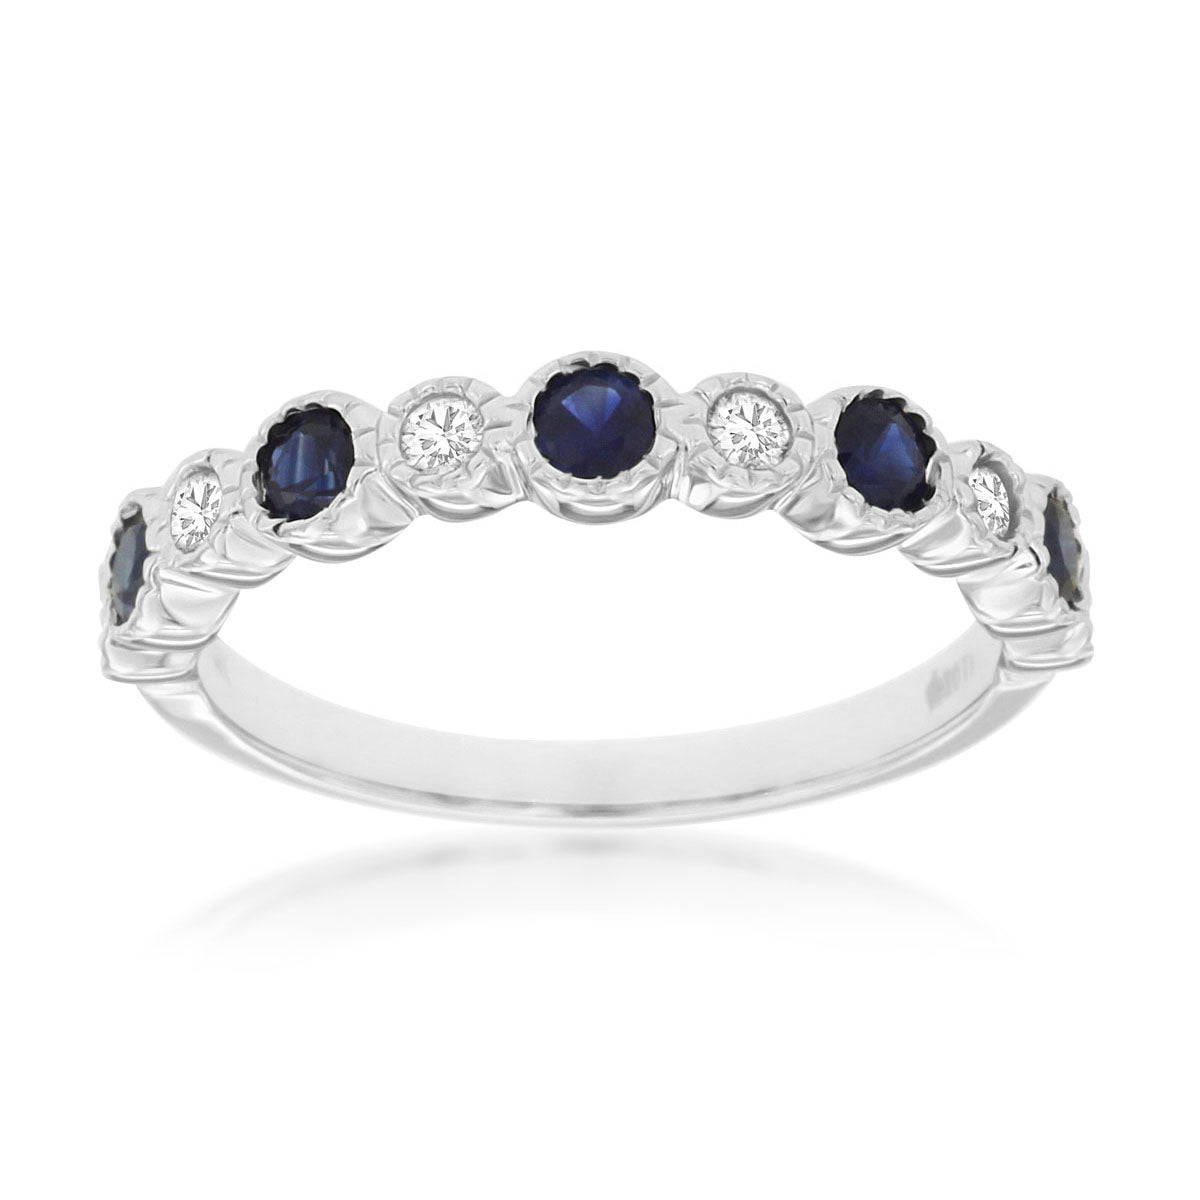 14kw Blue Sapphire and Diamond Anniversary Ring - eklektic jewelry studio